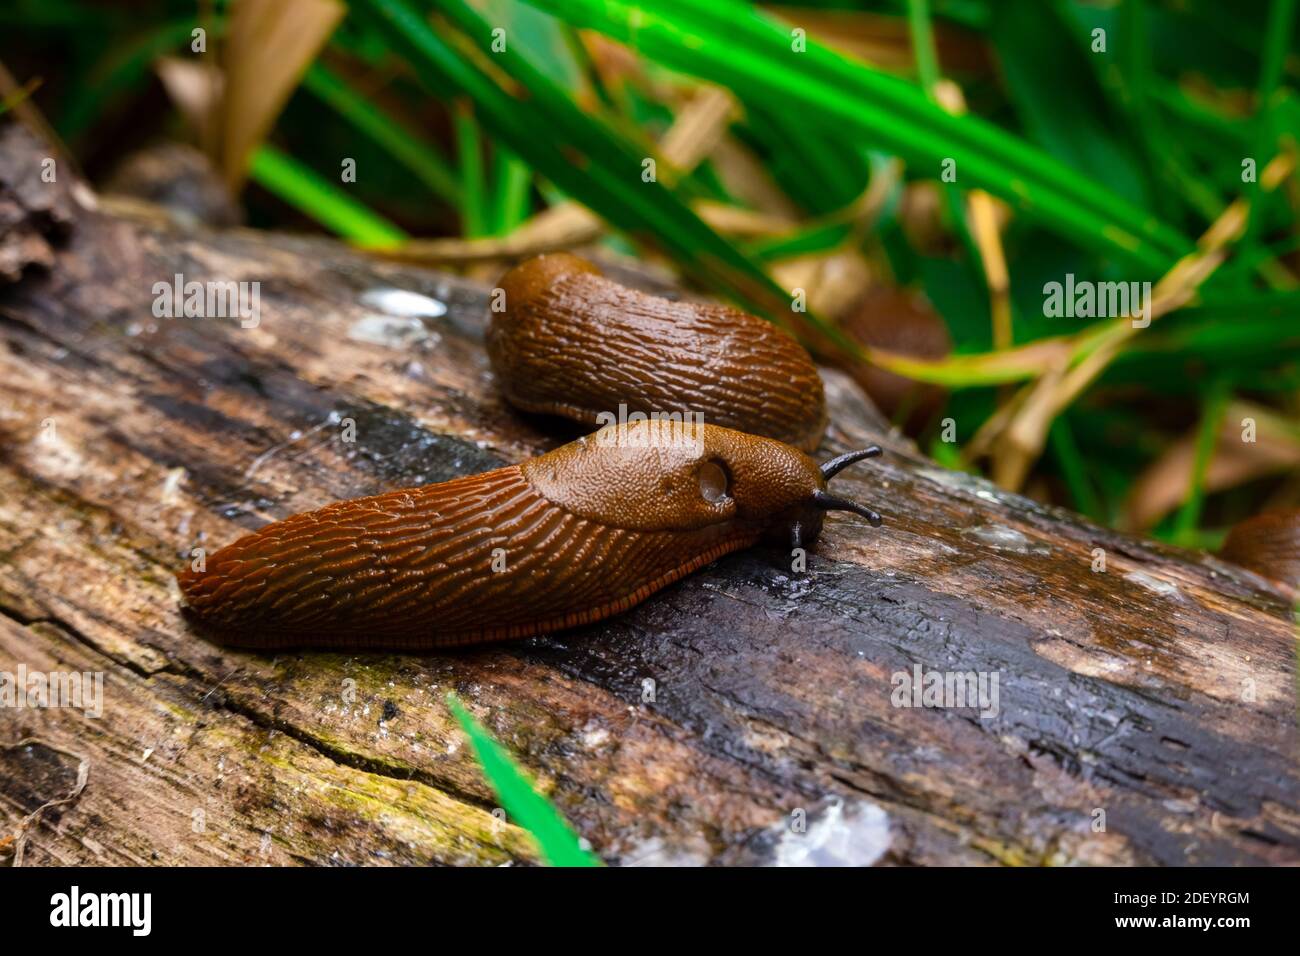 Vue rapprochée de la slug espagnole brune commune sur bois à l'extérieur. De grandes limaces d'escargot brunes rampant dans le jardin Banque D'Images